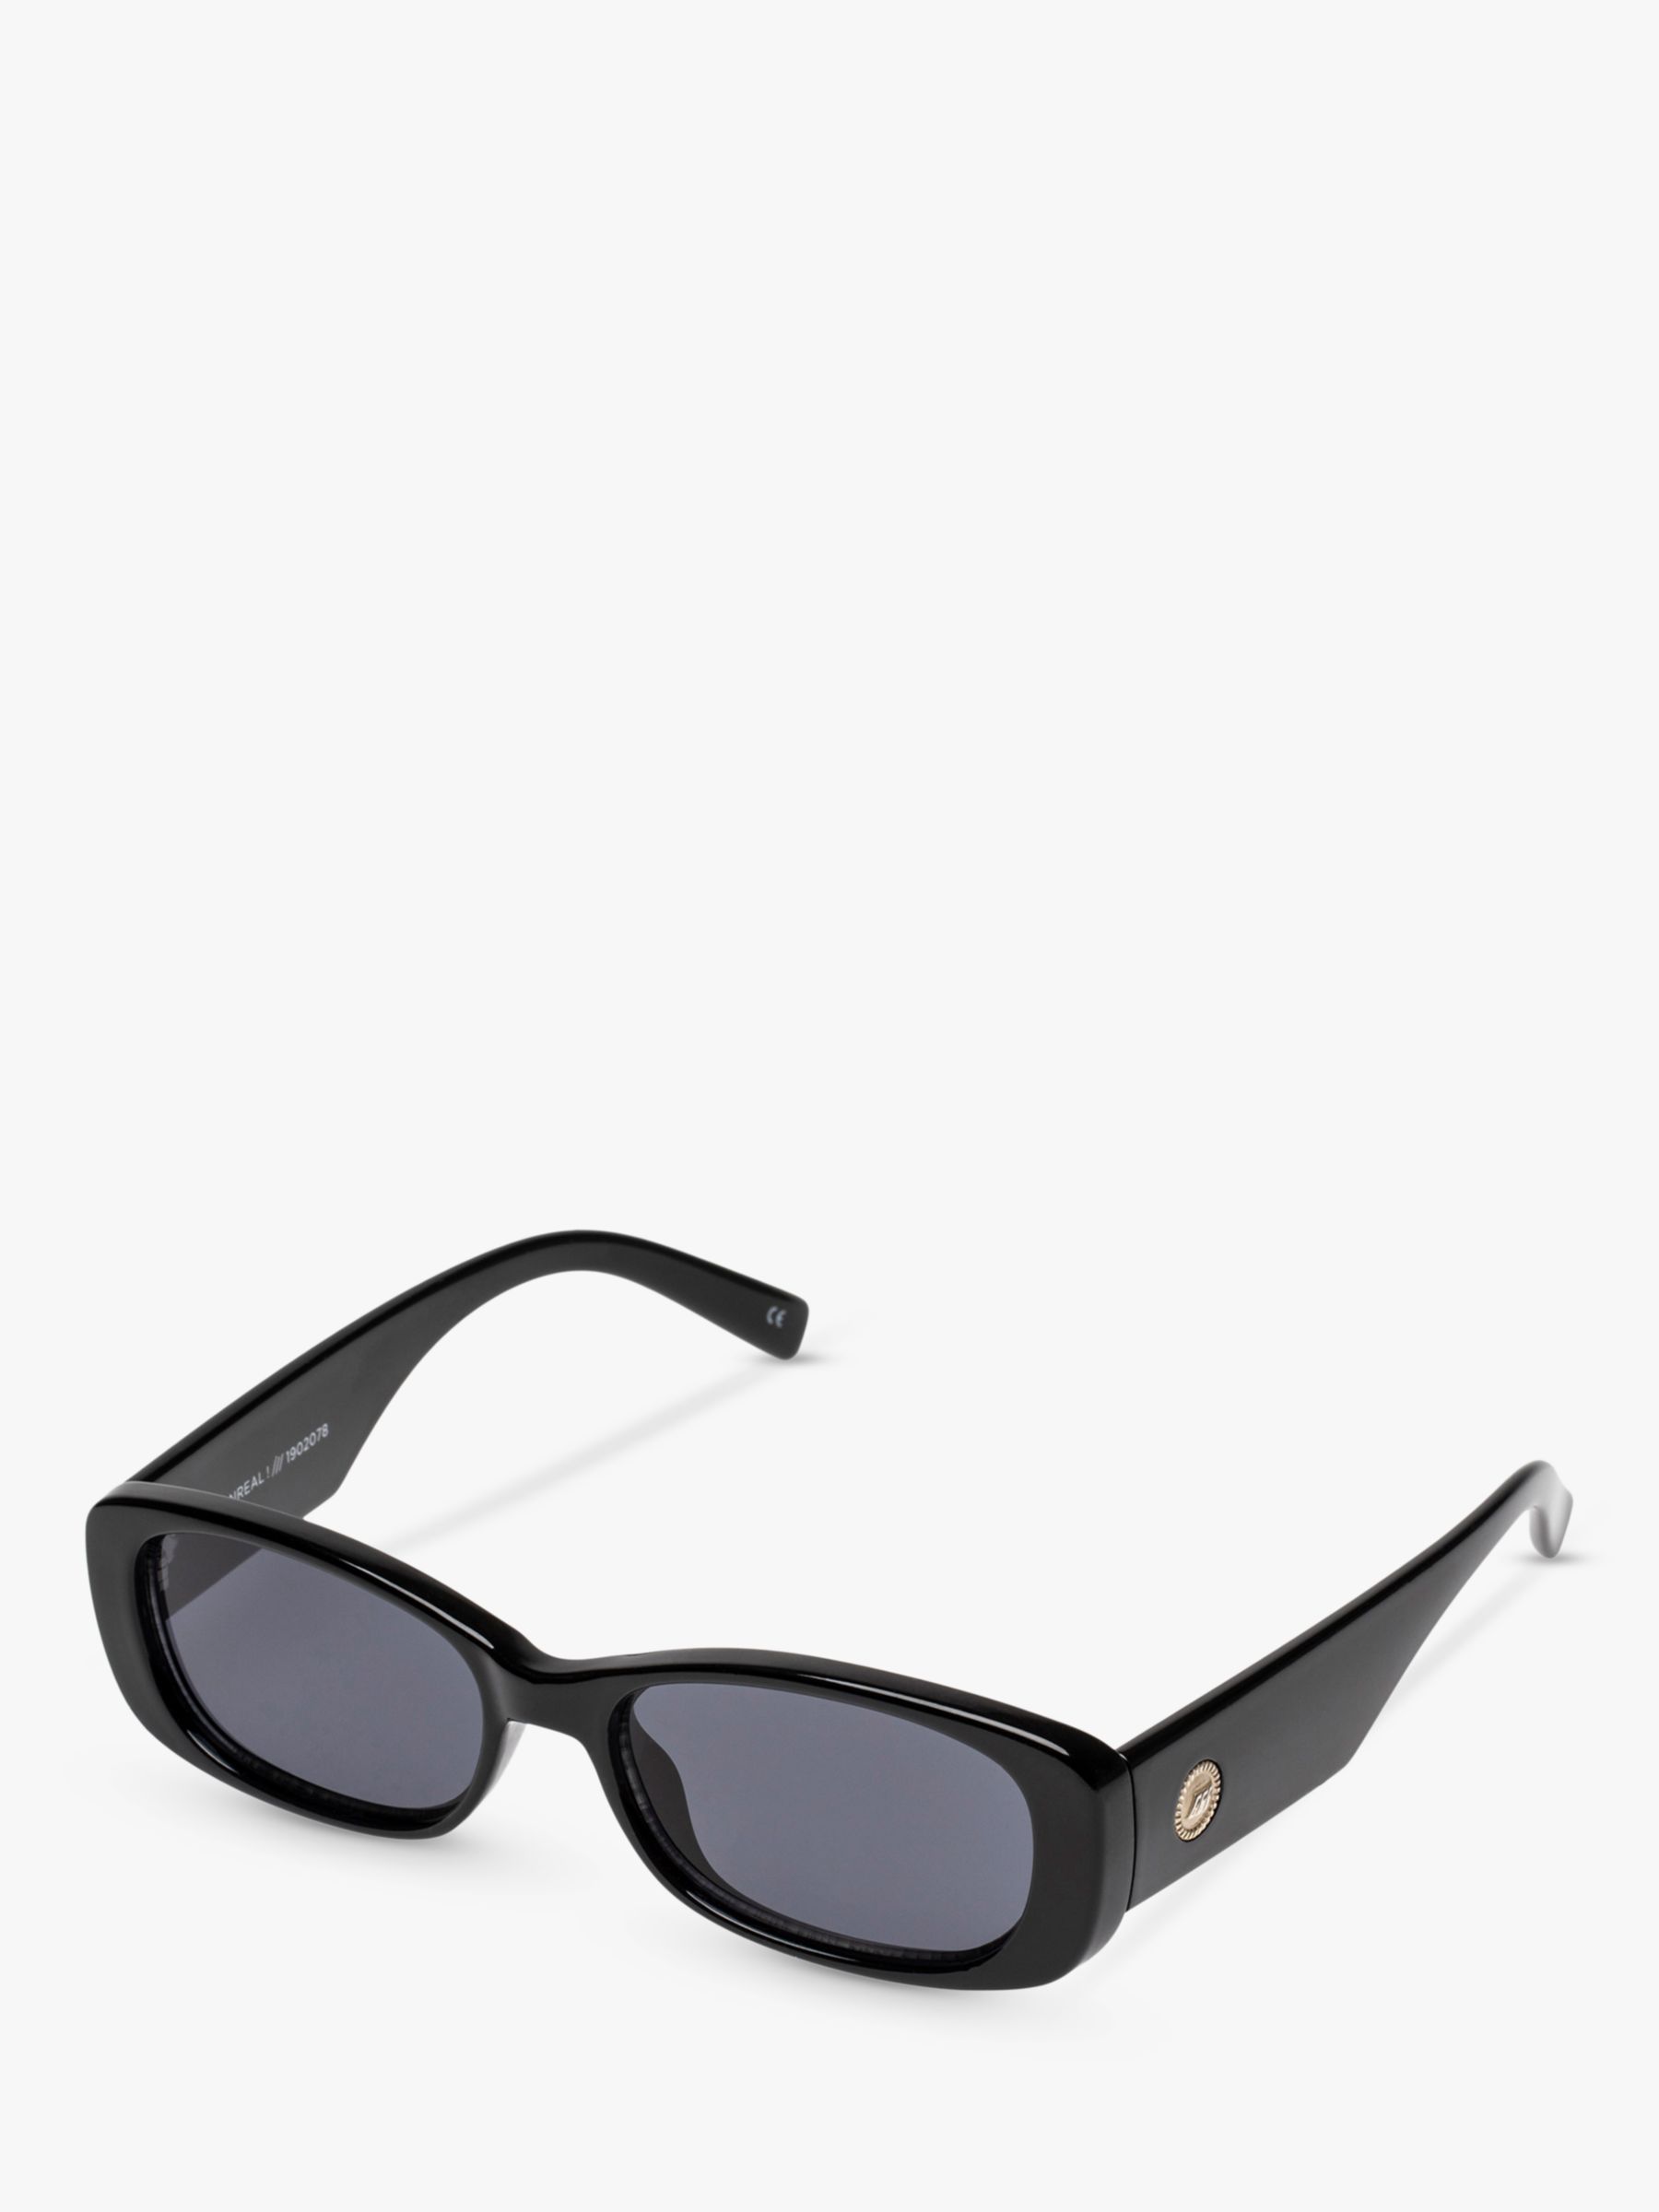 Le Specs Women's Unreal Rectangular Sunglasses, Black L5000165 at John ...